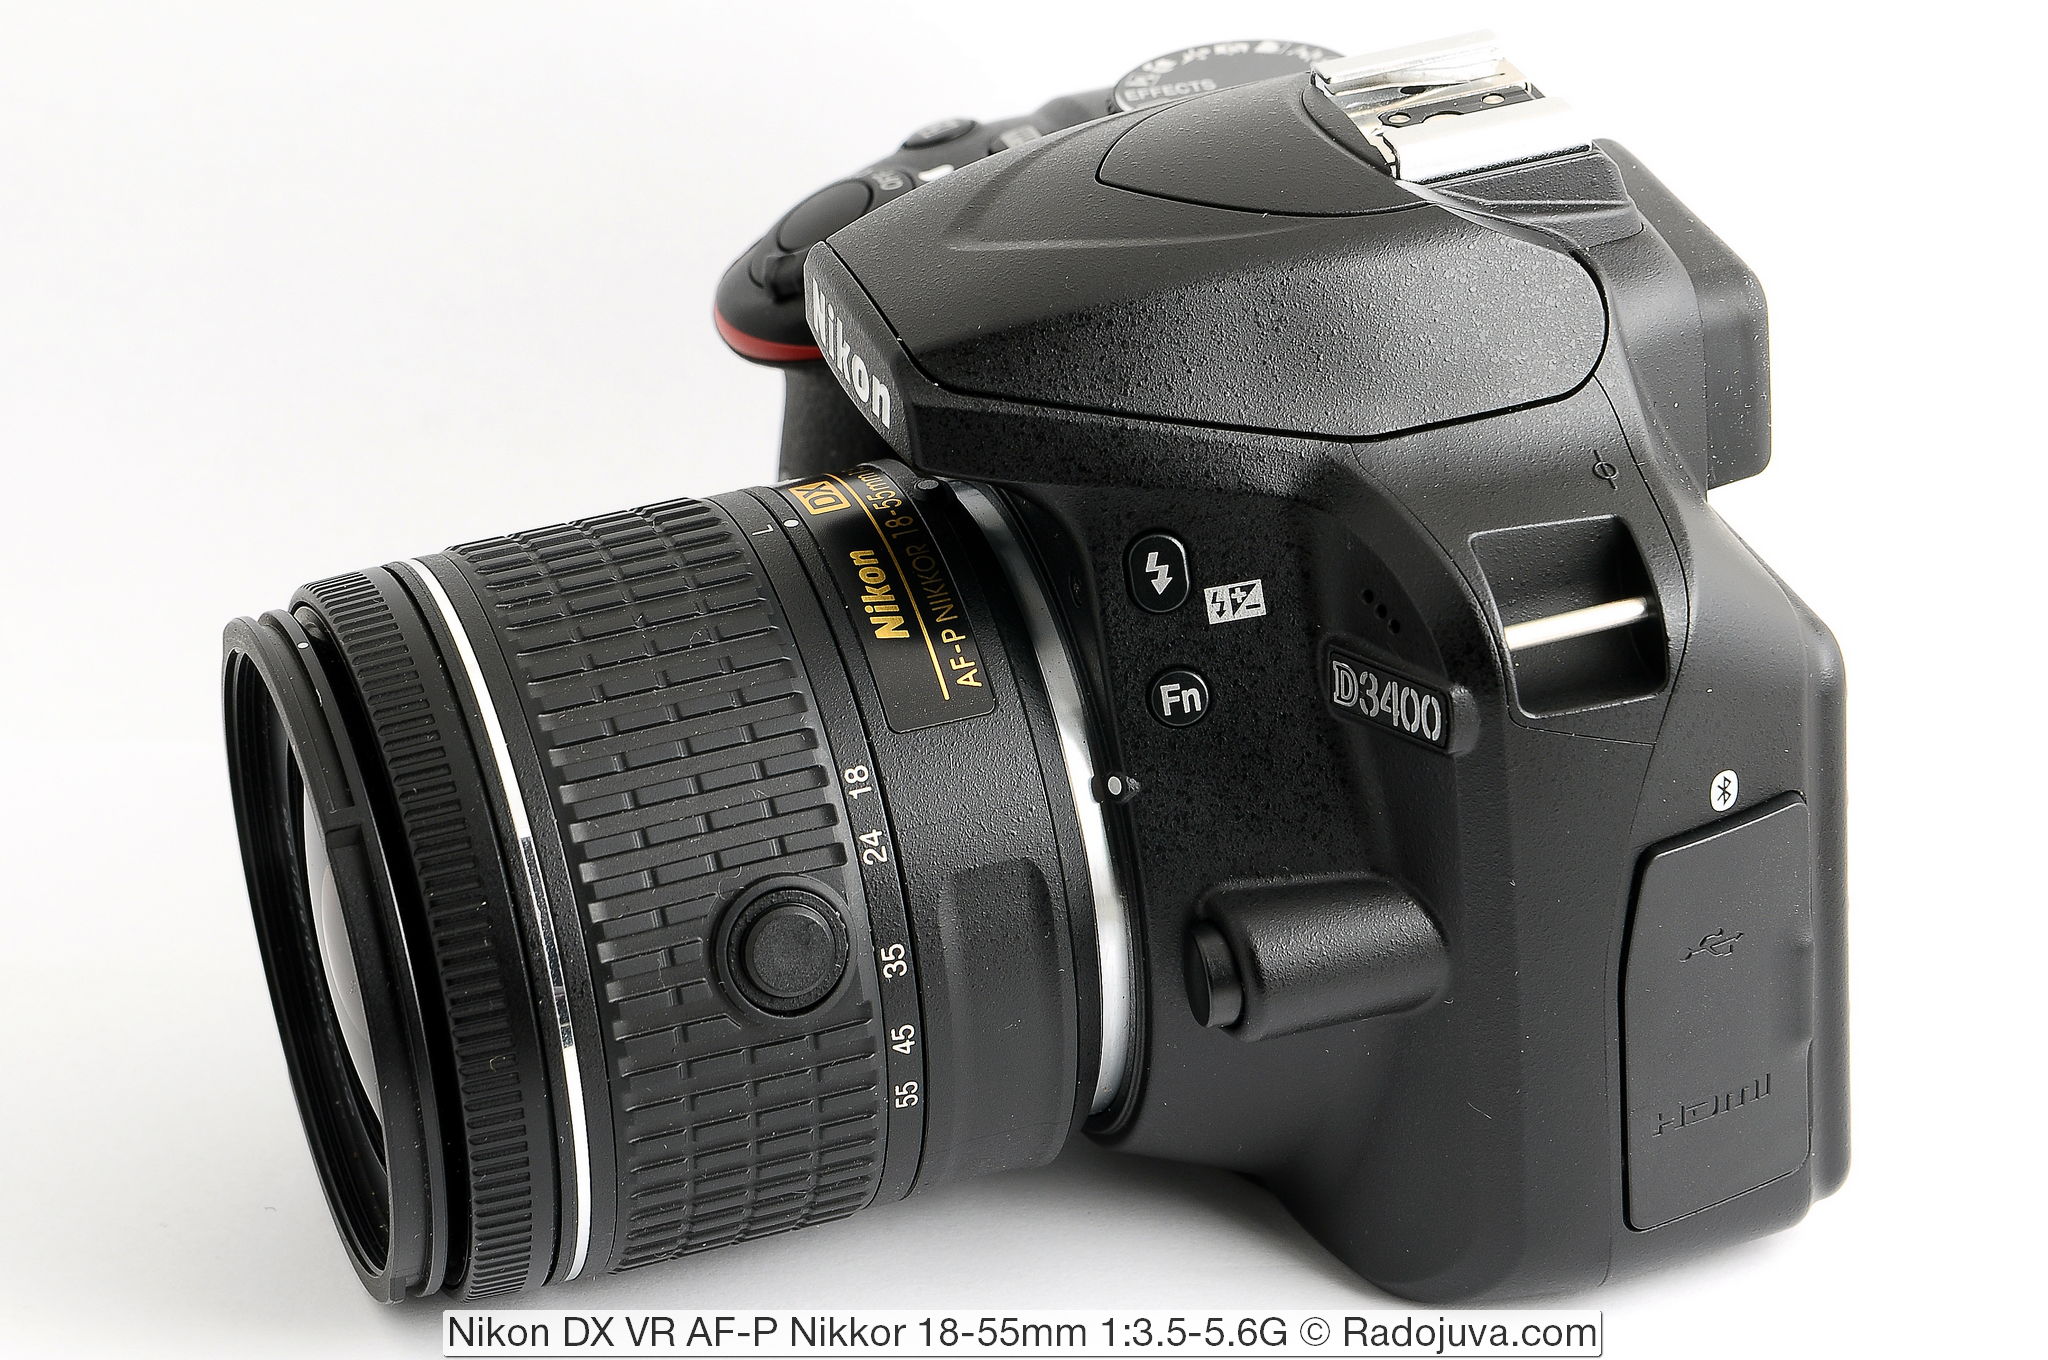 Nikon DX VR AF-P Nikkor 18-55mm 1:3.5-5.6G и фотоаппарат Nikon D3400